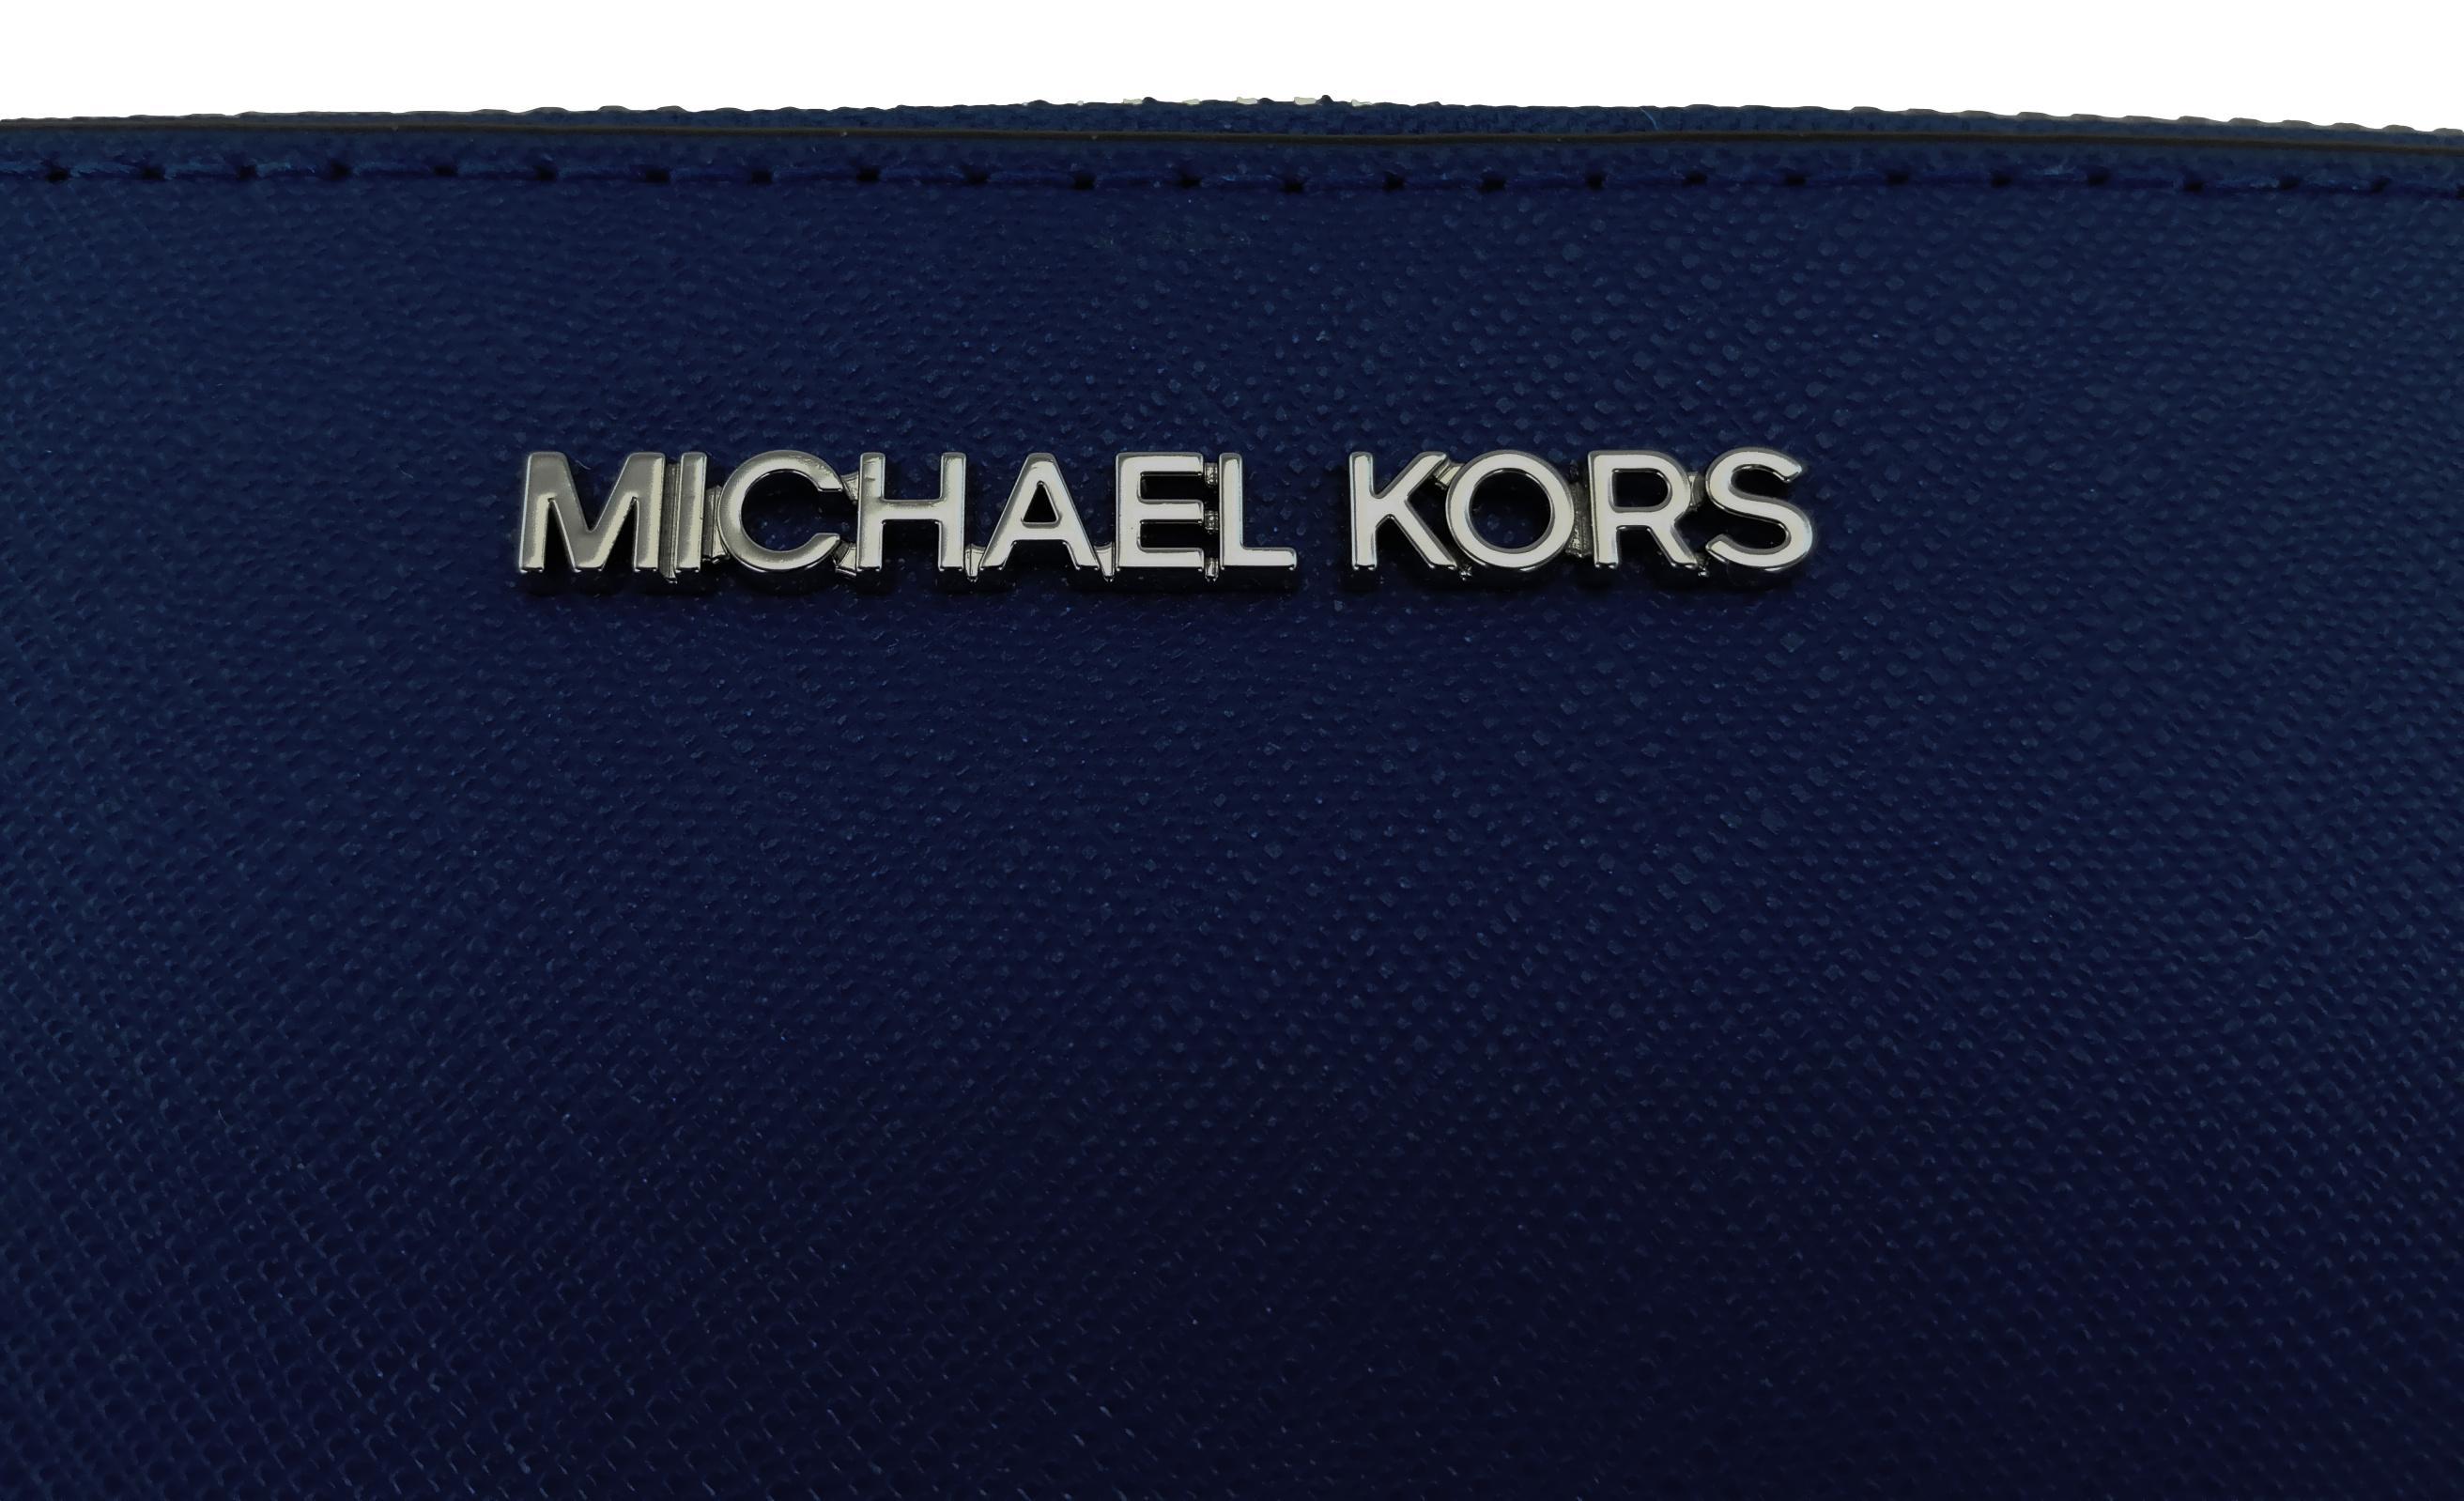 Michael Kors blue purse | Blue purse, Michael kors bag, Purses